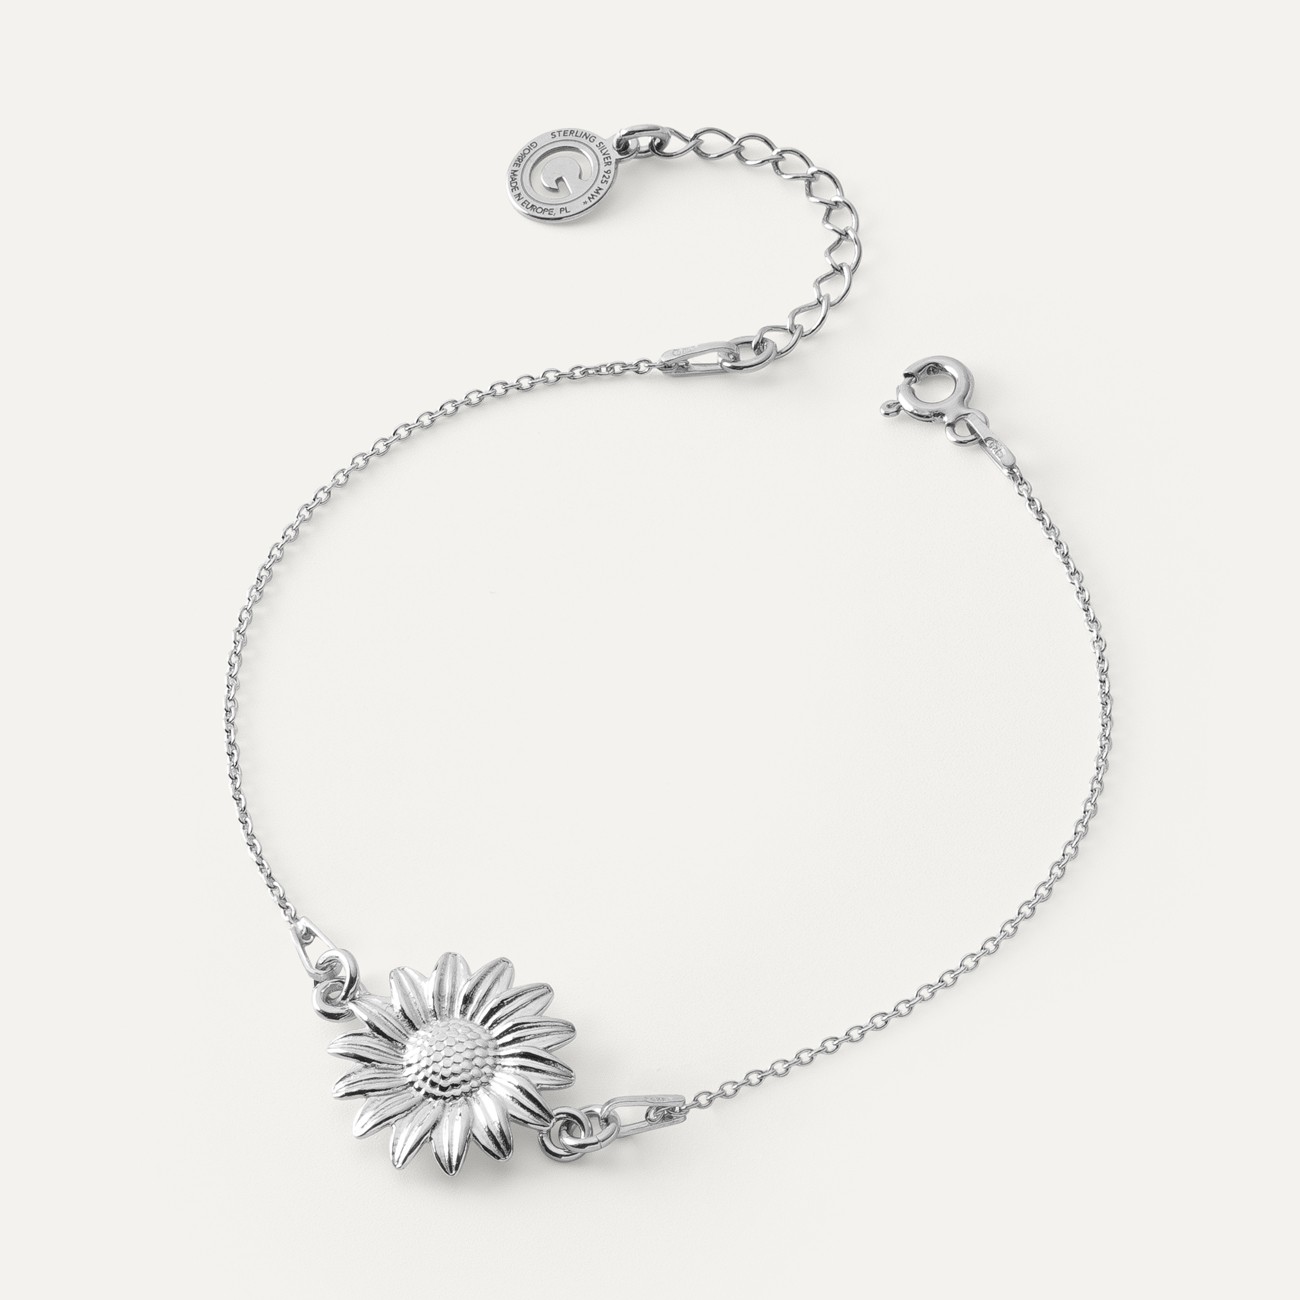 Silver sunflower bracelet, AUGUSTYNKA x GIORRE